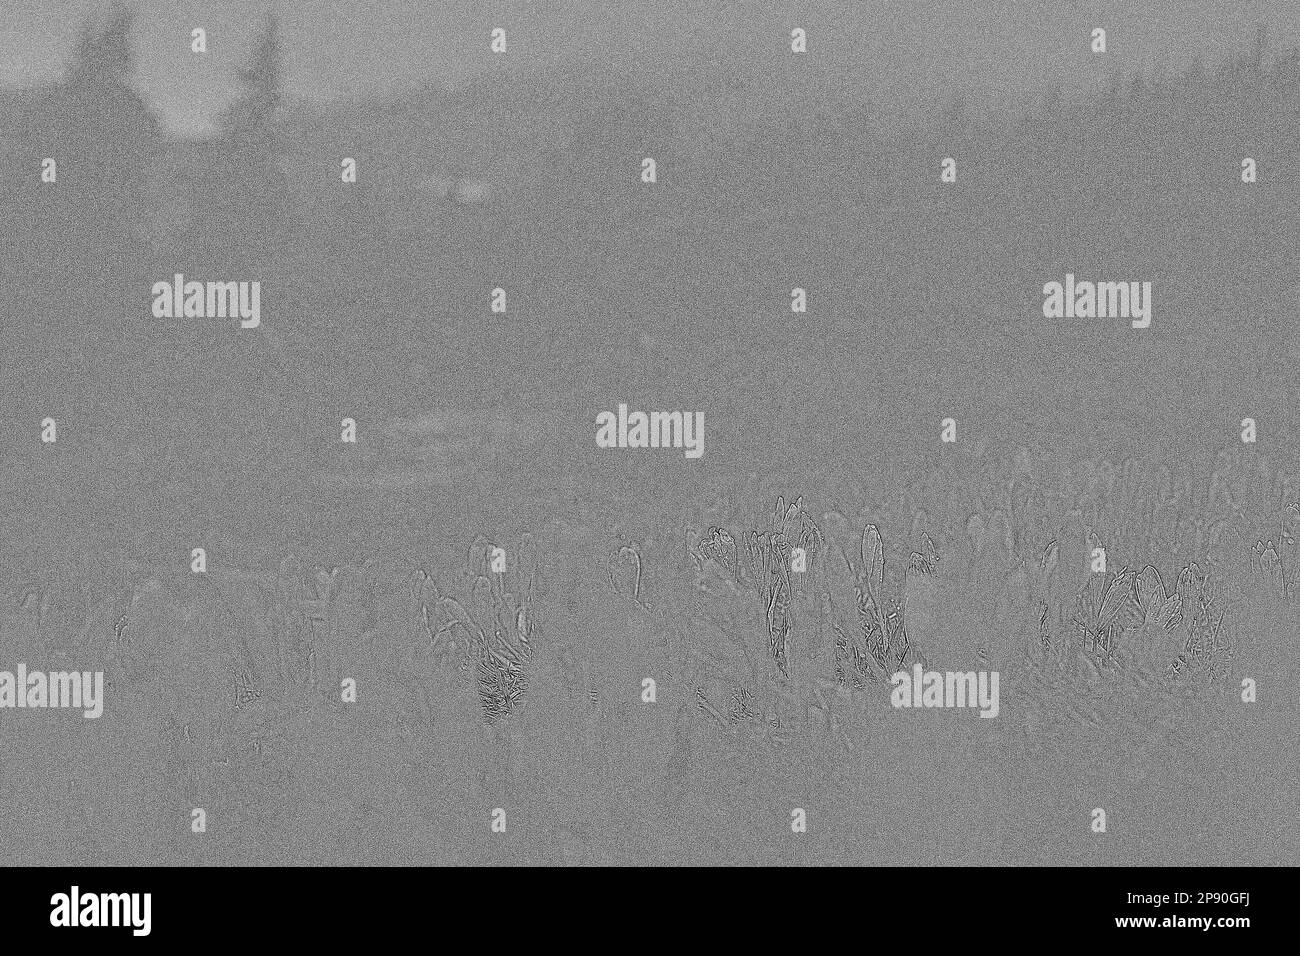 Colline sombre de brouillard avec crocuses violet foncé gravure esquisse dessinée à la main. Mise en plan greneuse monochrome paysage au réalisme photographique. Scène nature de haute qualité Banque D'Images